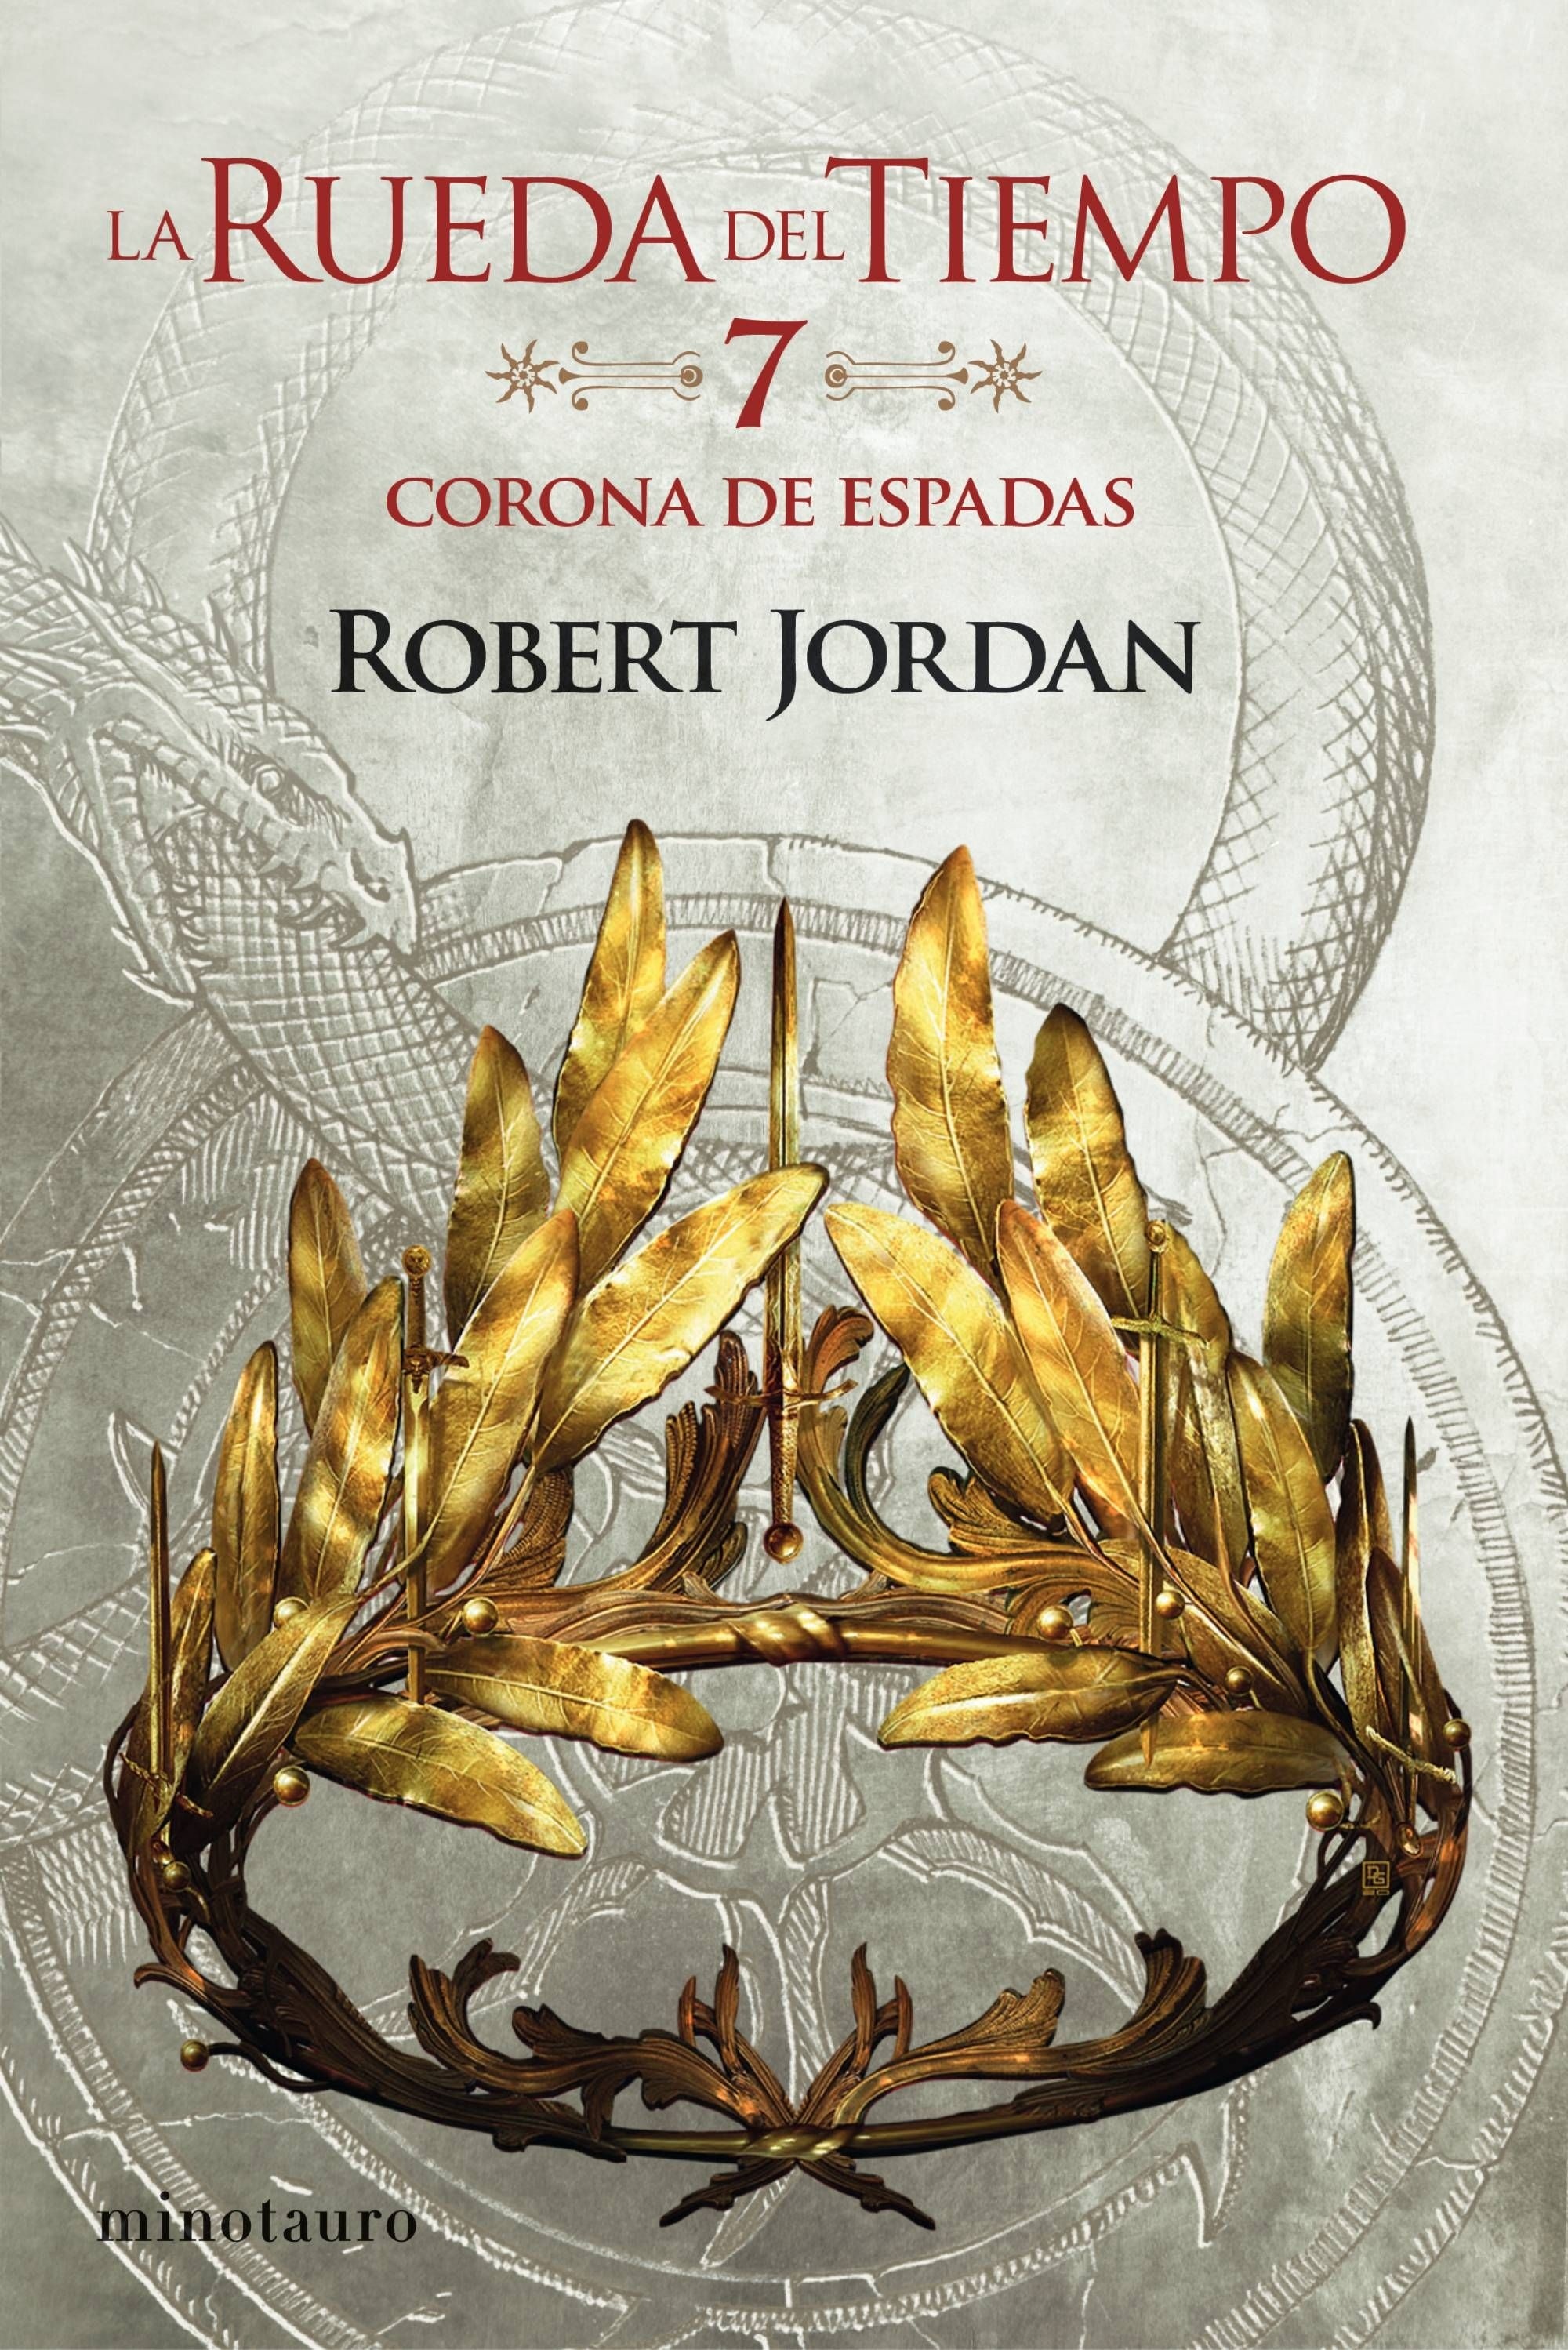 Corona de Espadas "La Rueda del Tiempo 7". 